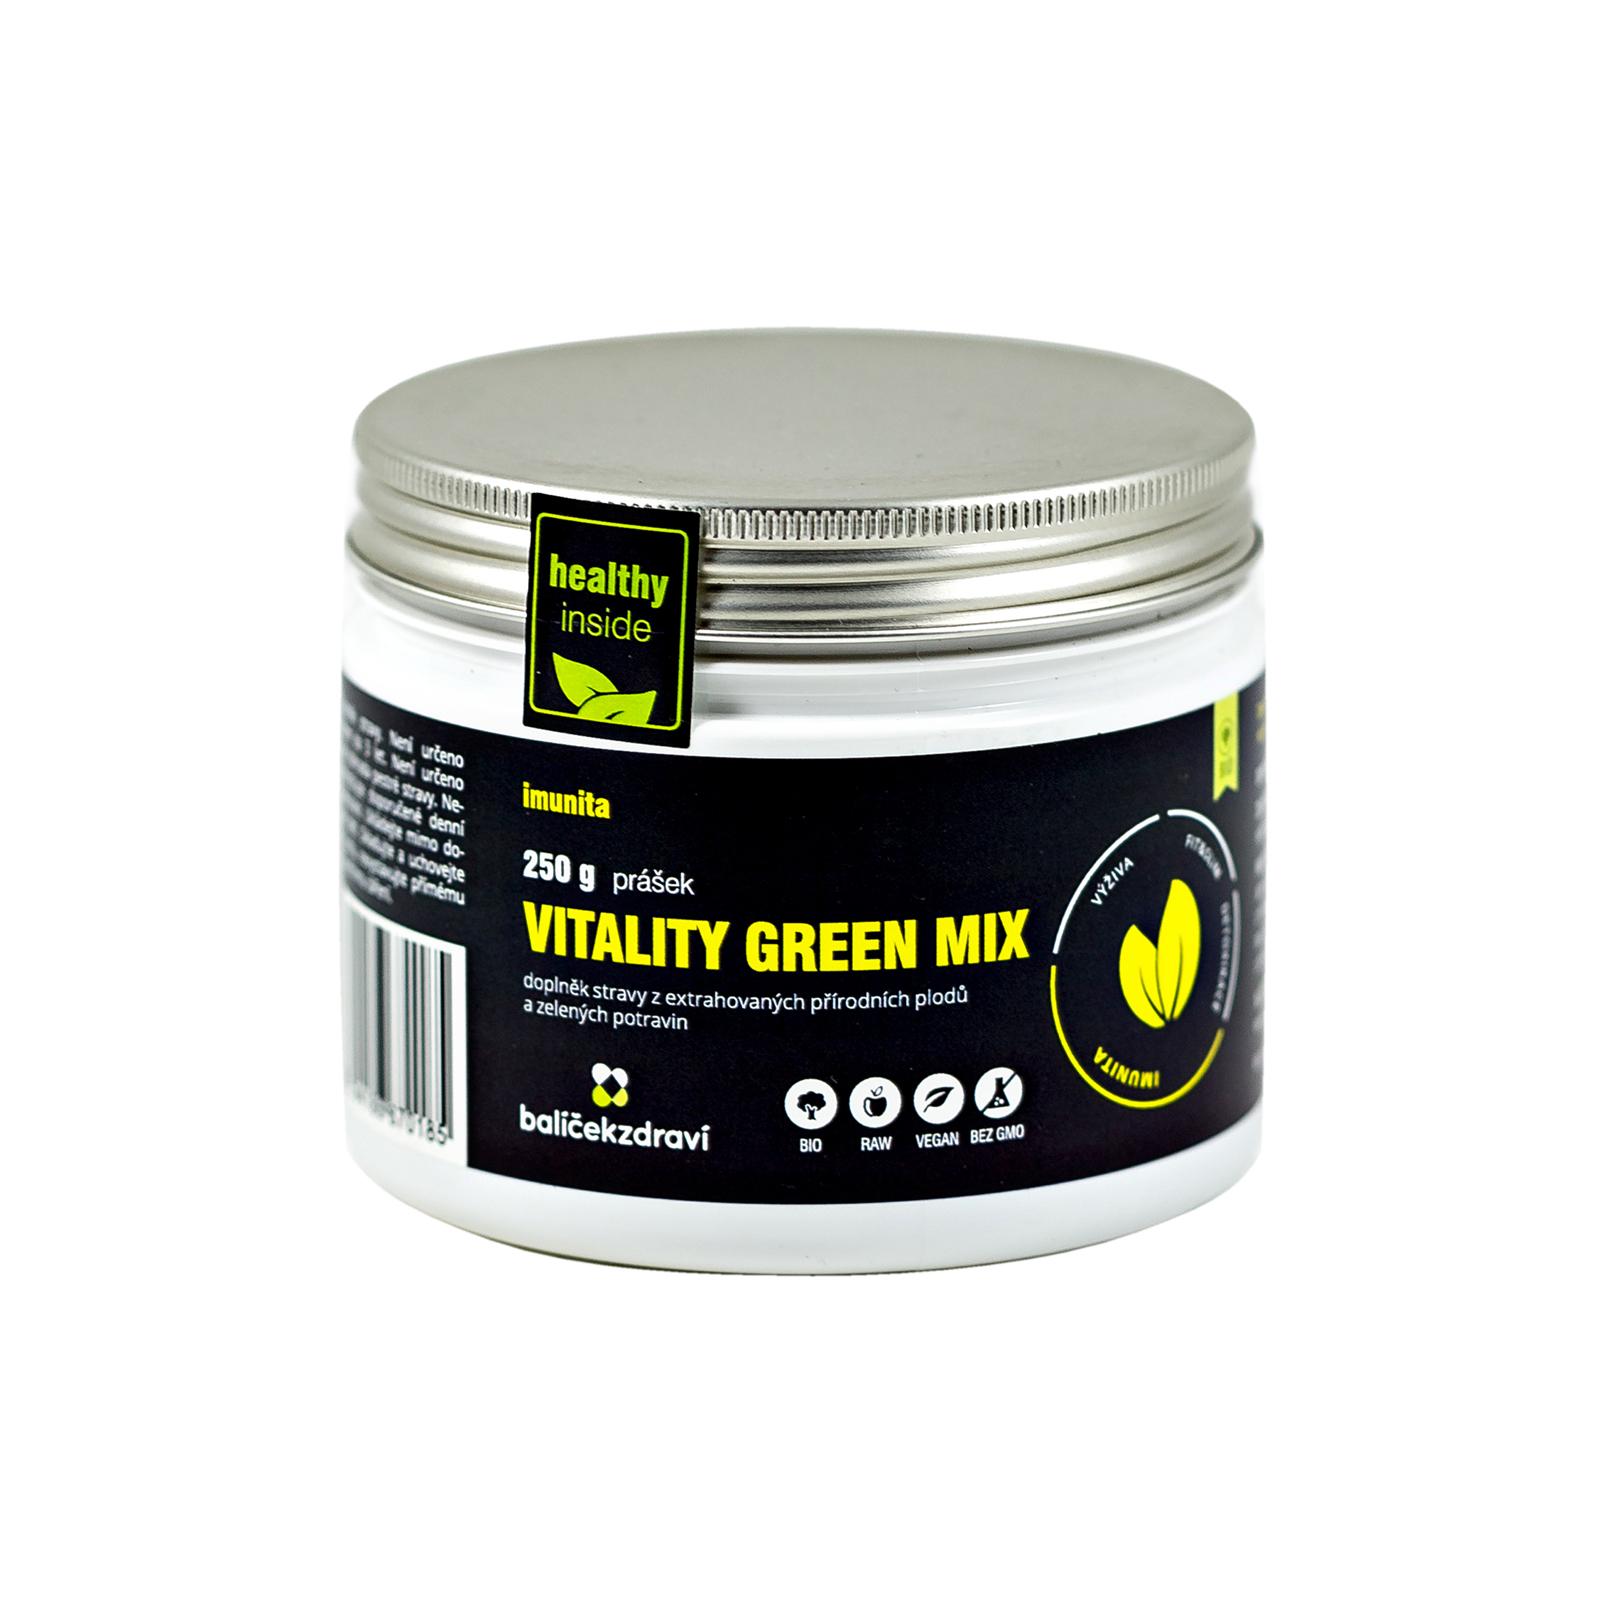 Balíček zdraví Vitality green mix, bio 250 g